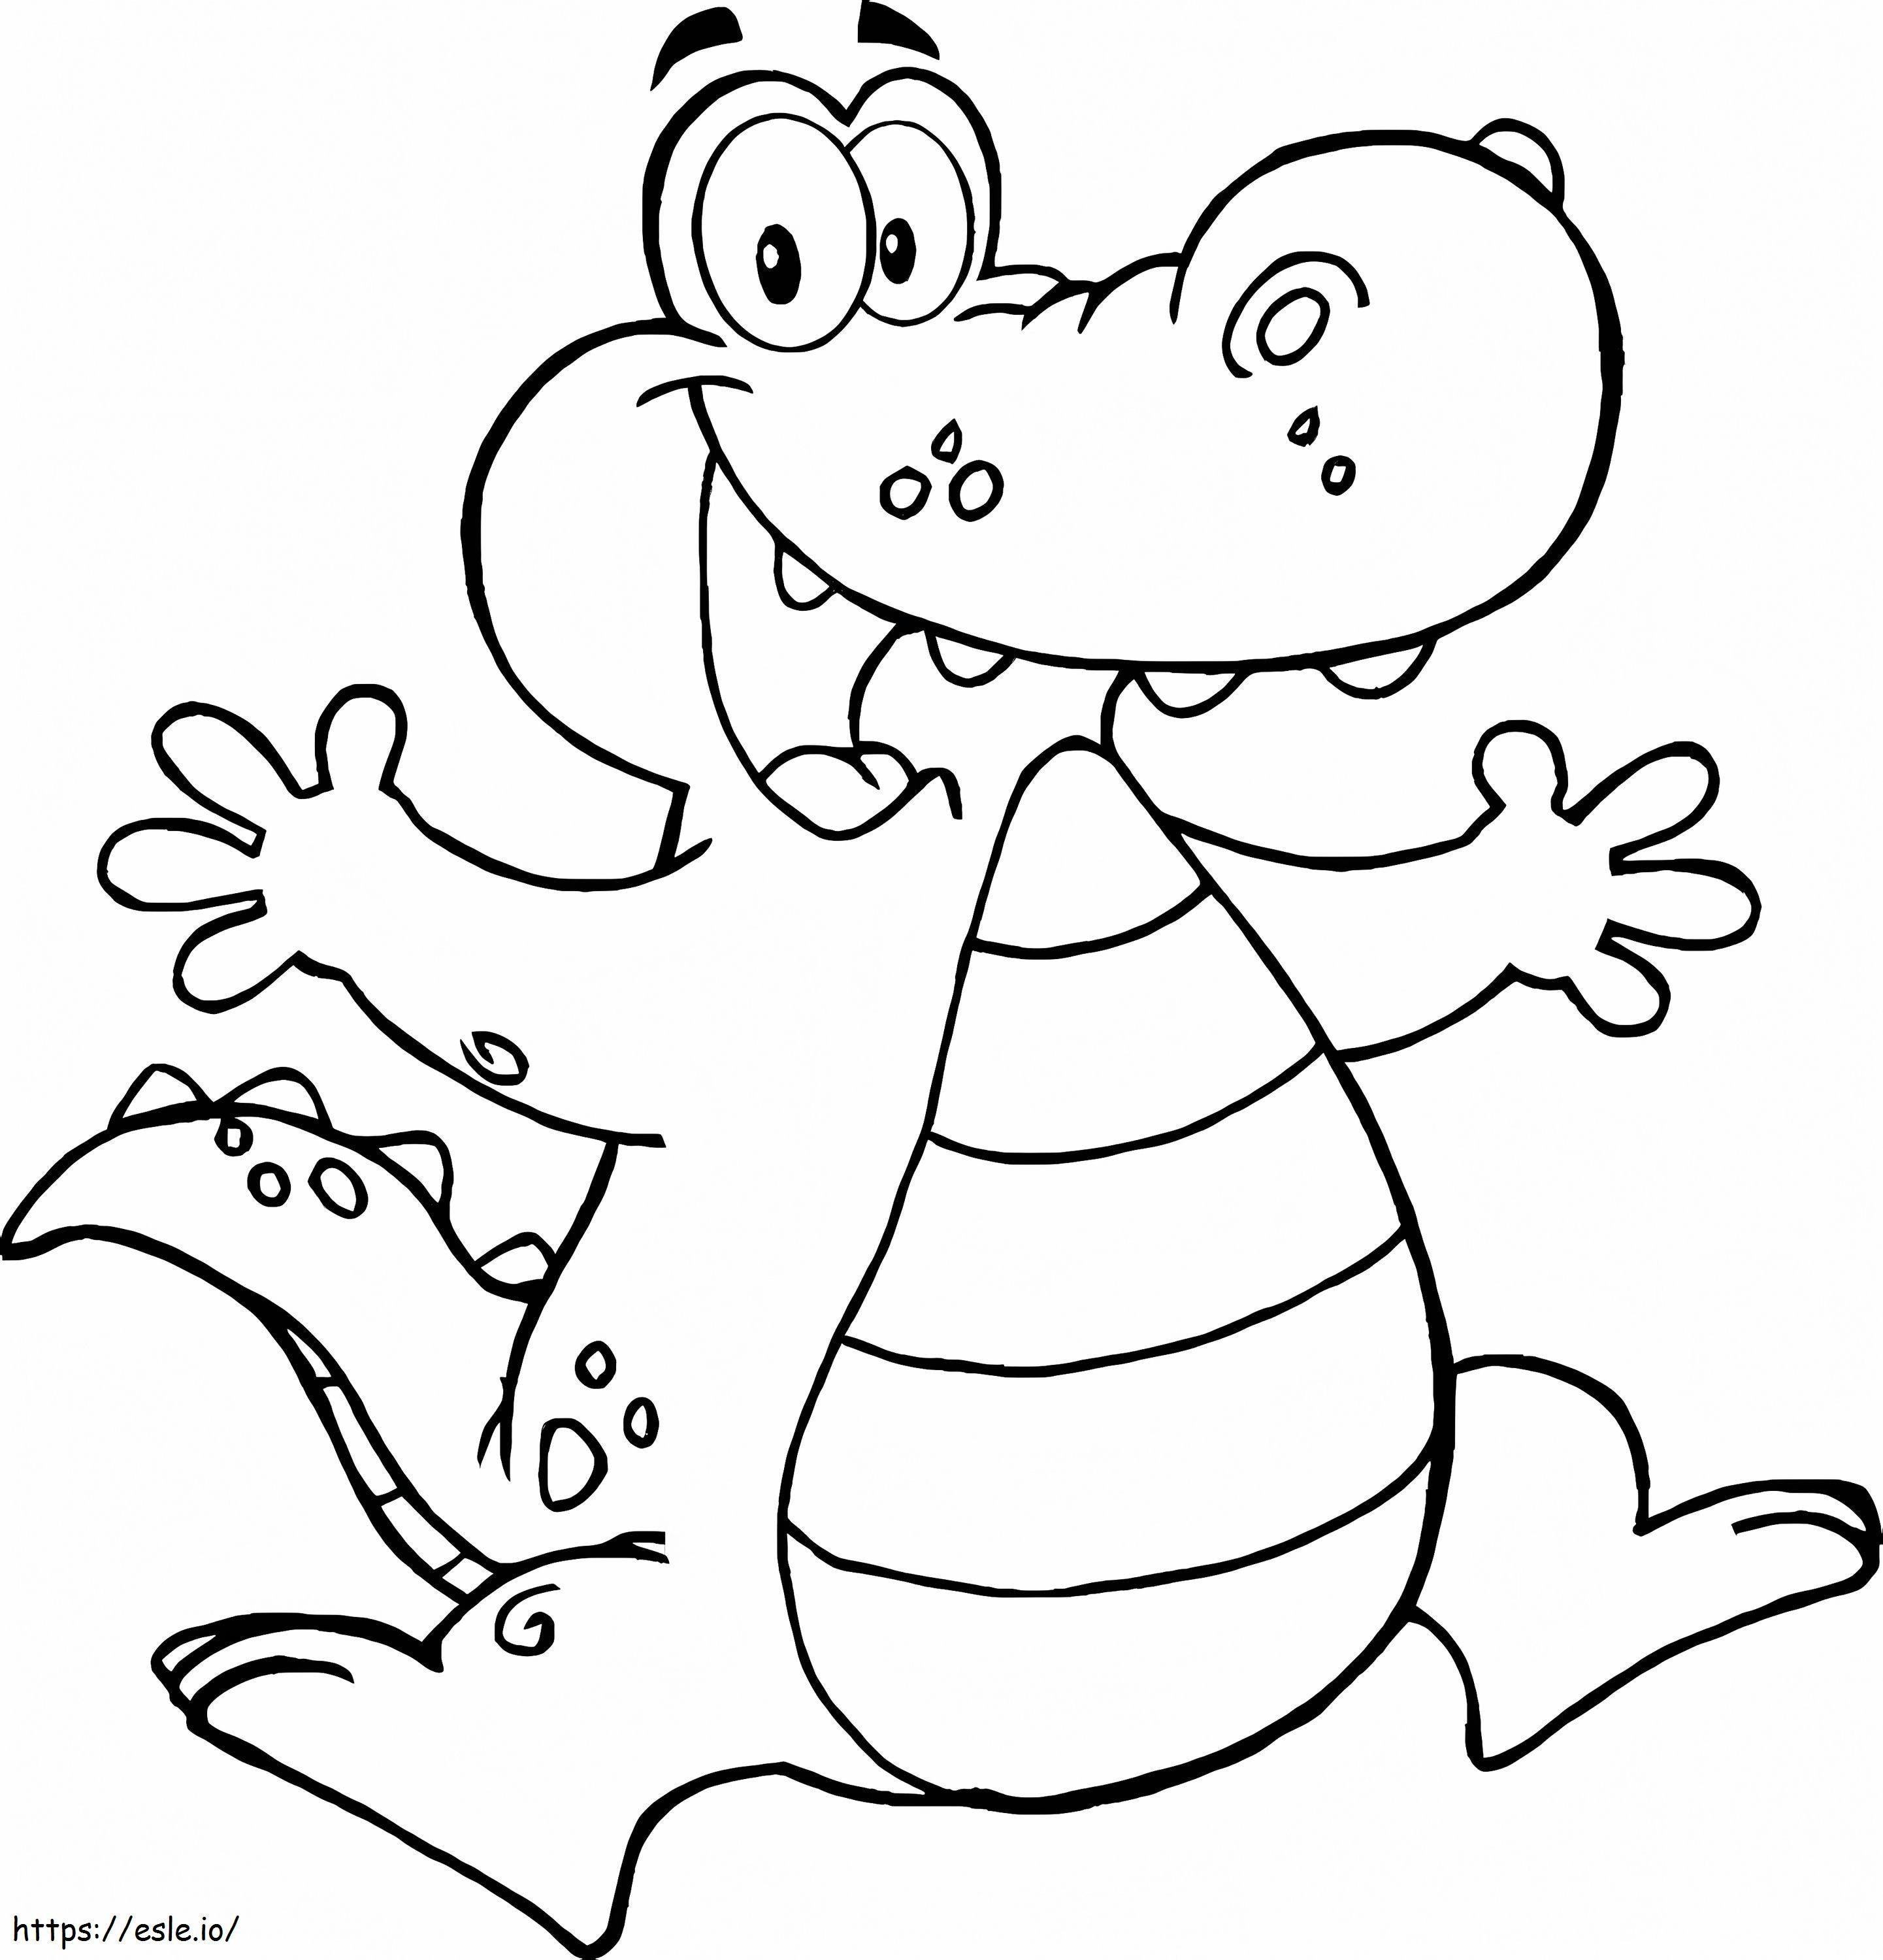 Happy Cartoon Crocodile coloring page